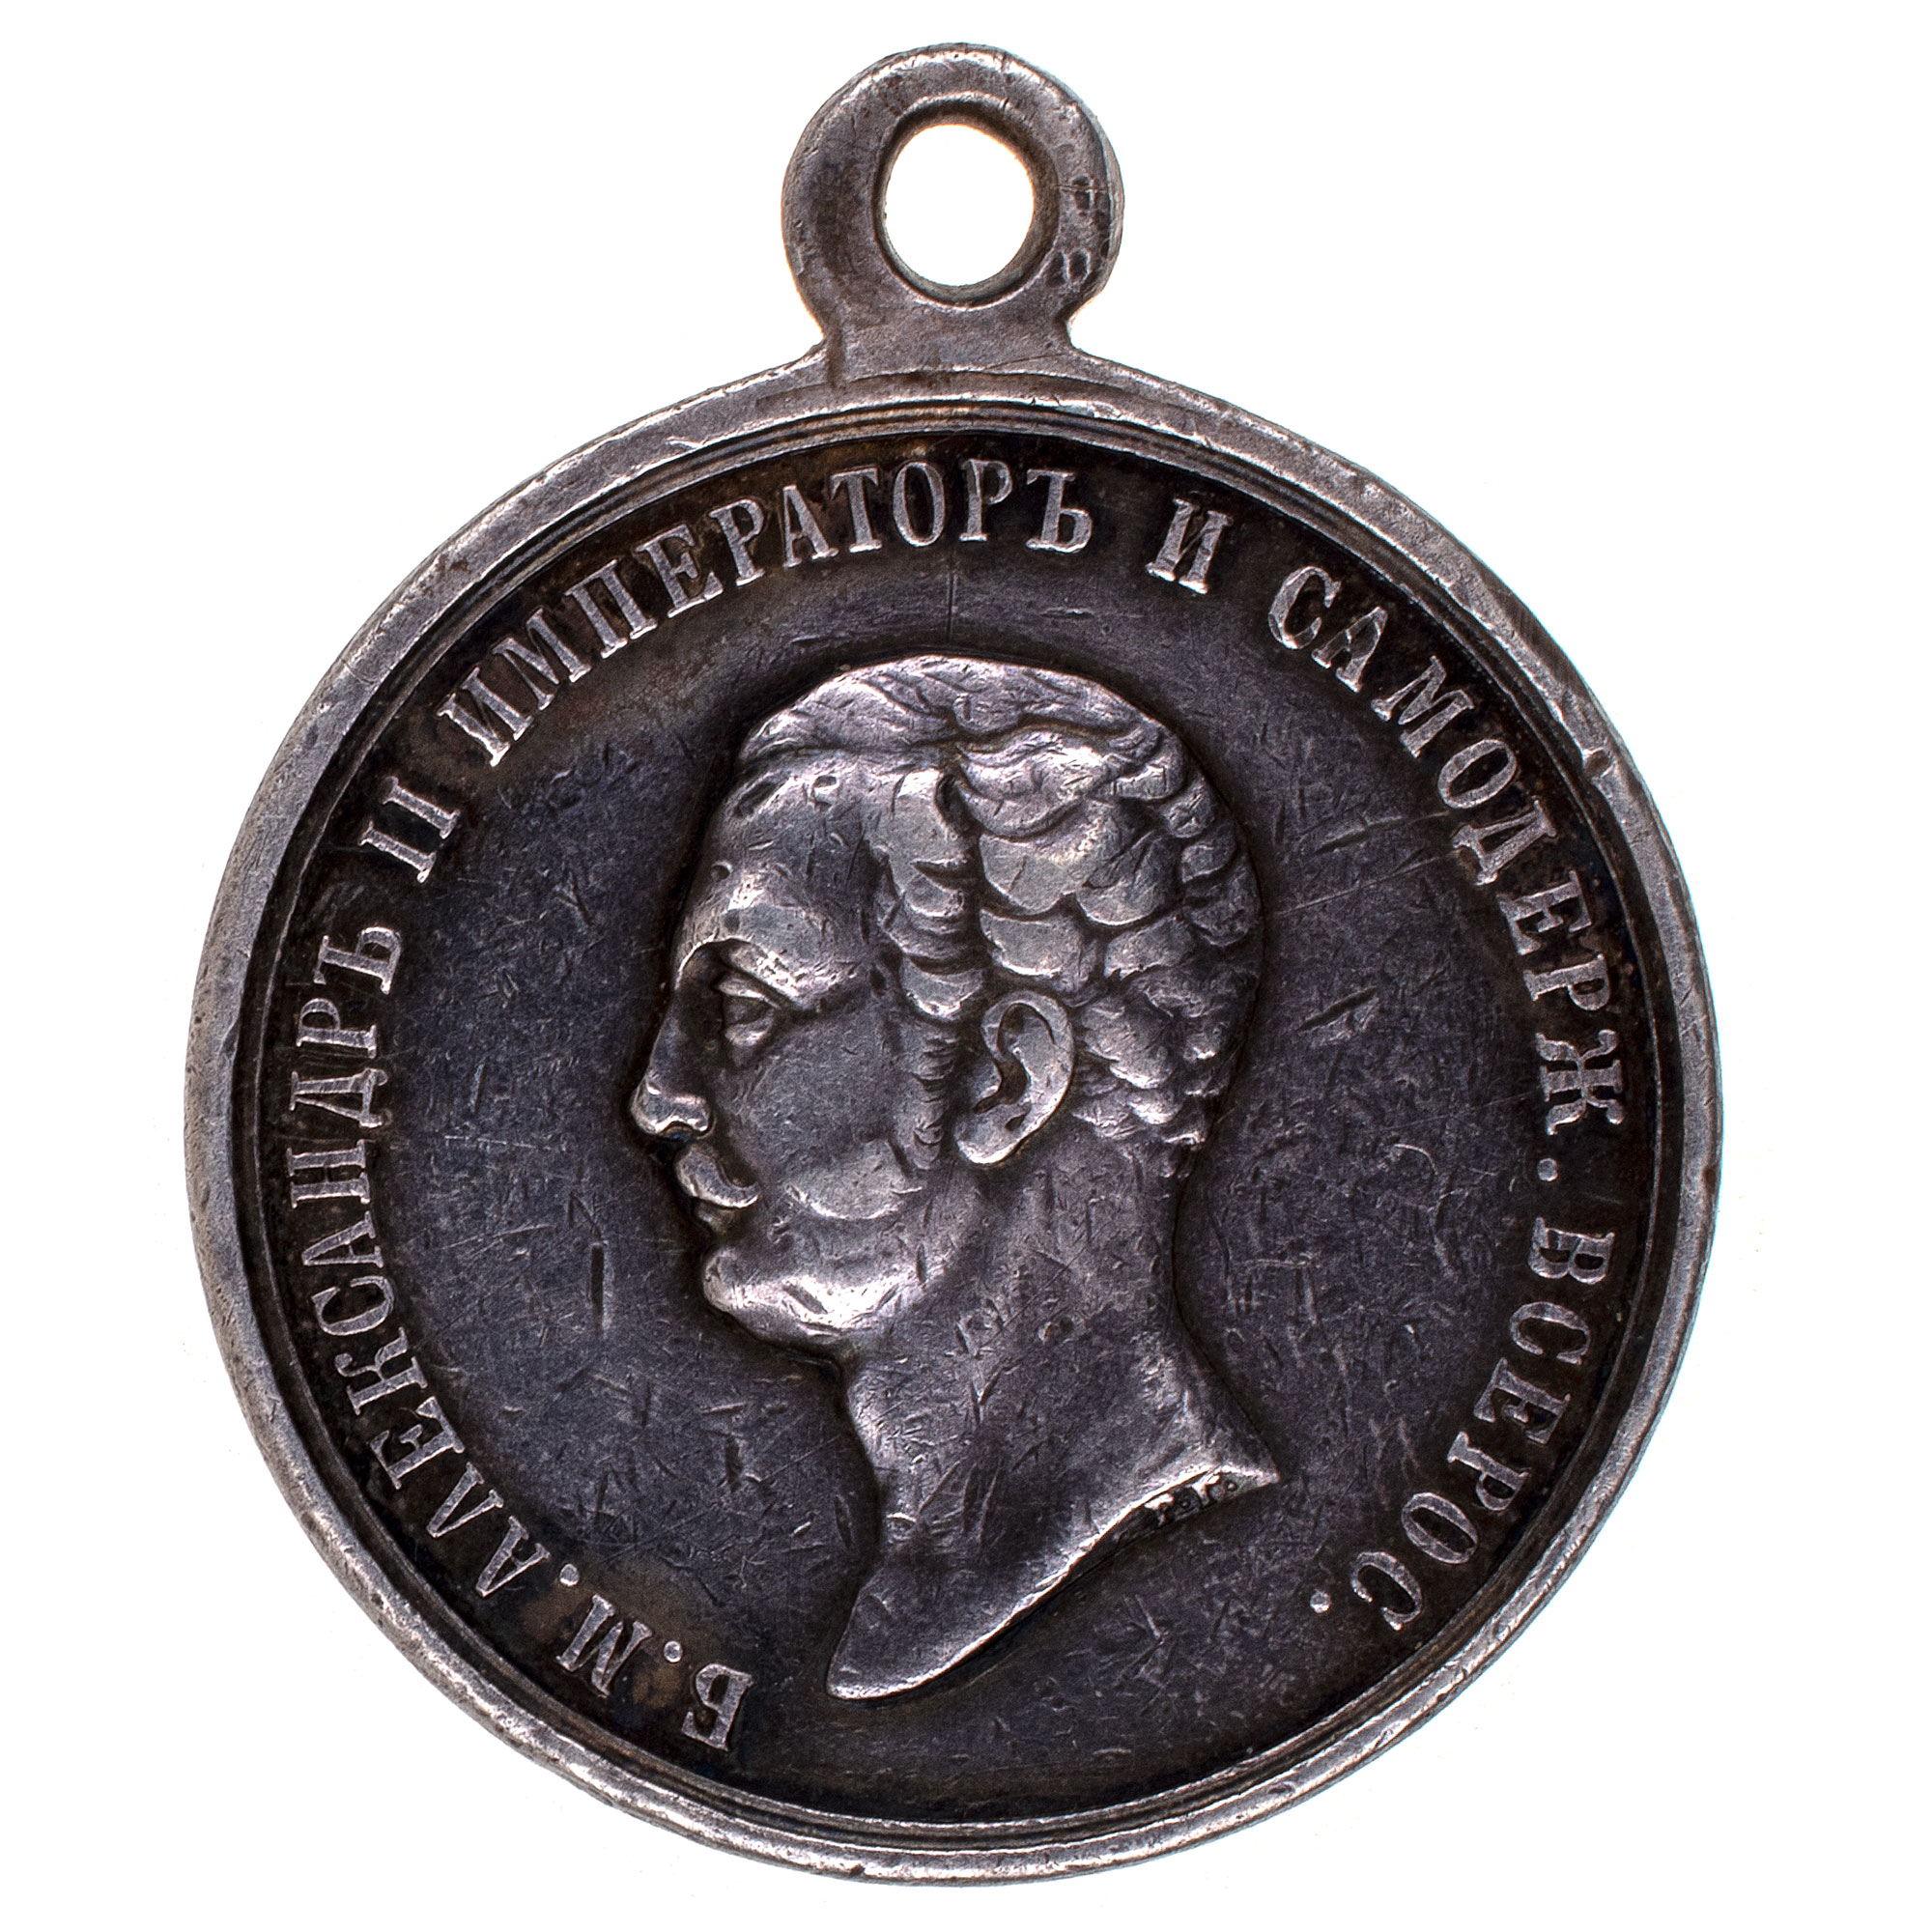 Медаль "За Храбрость" с портретом Императора Александра II. 